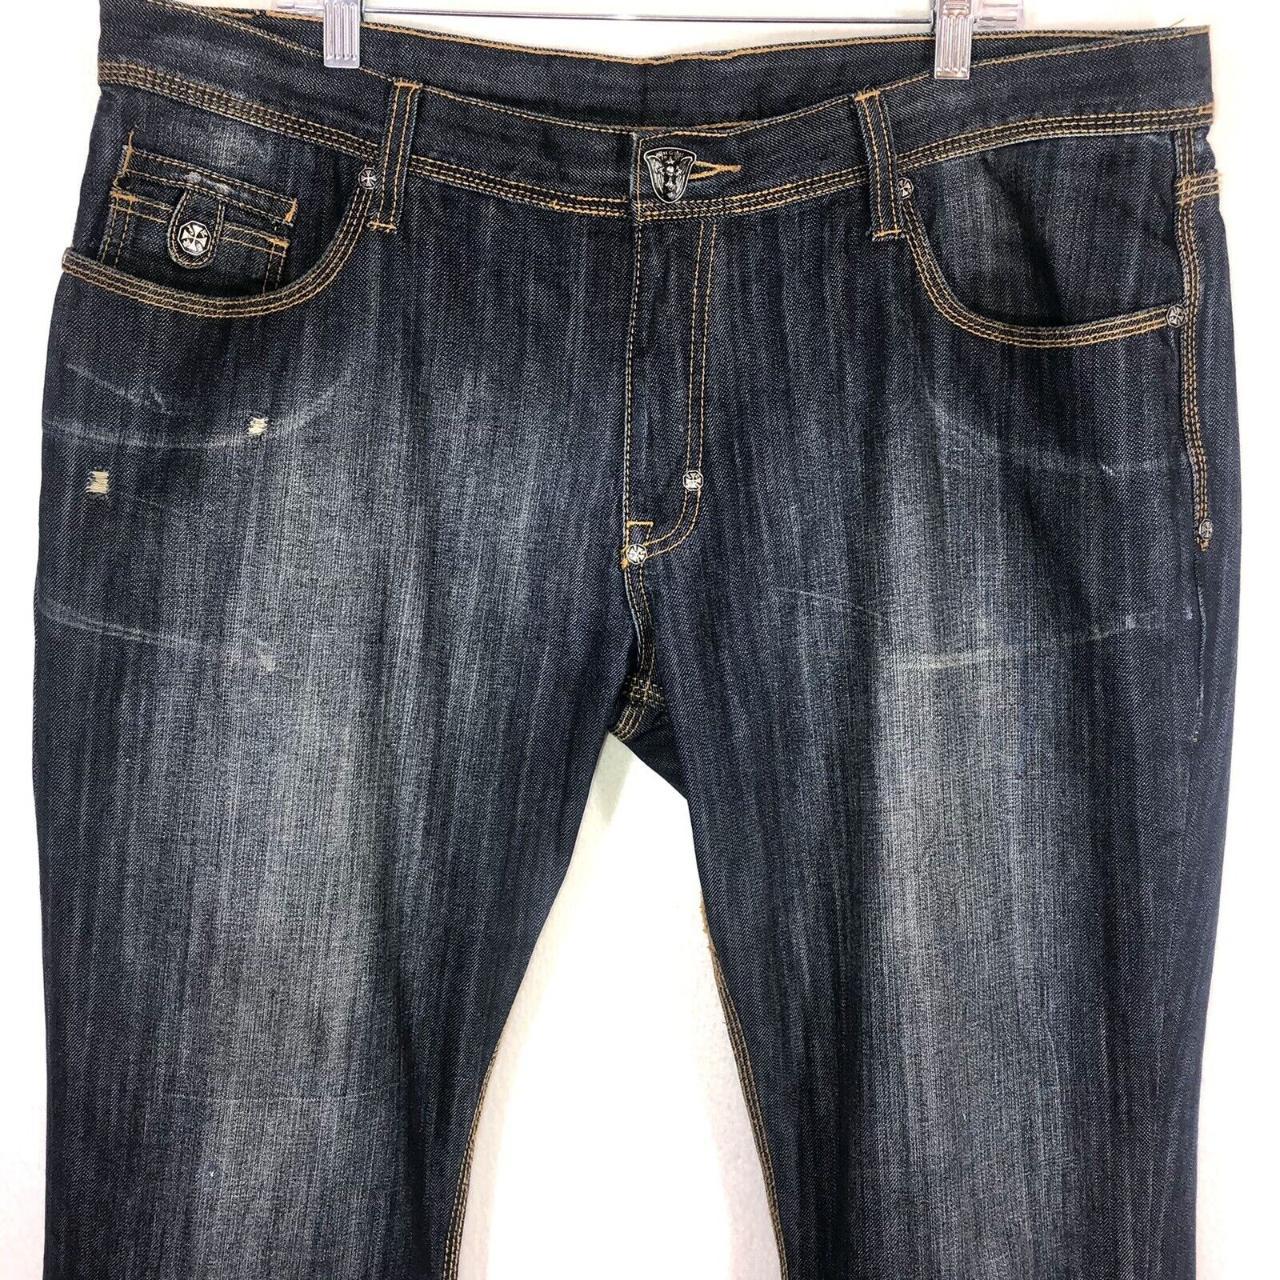 Mens Blac Label Premium Jeans Size 42X33... - Depop